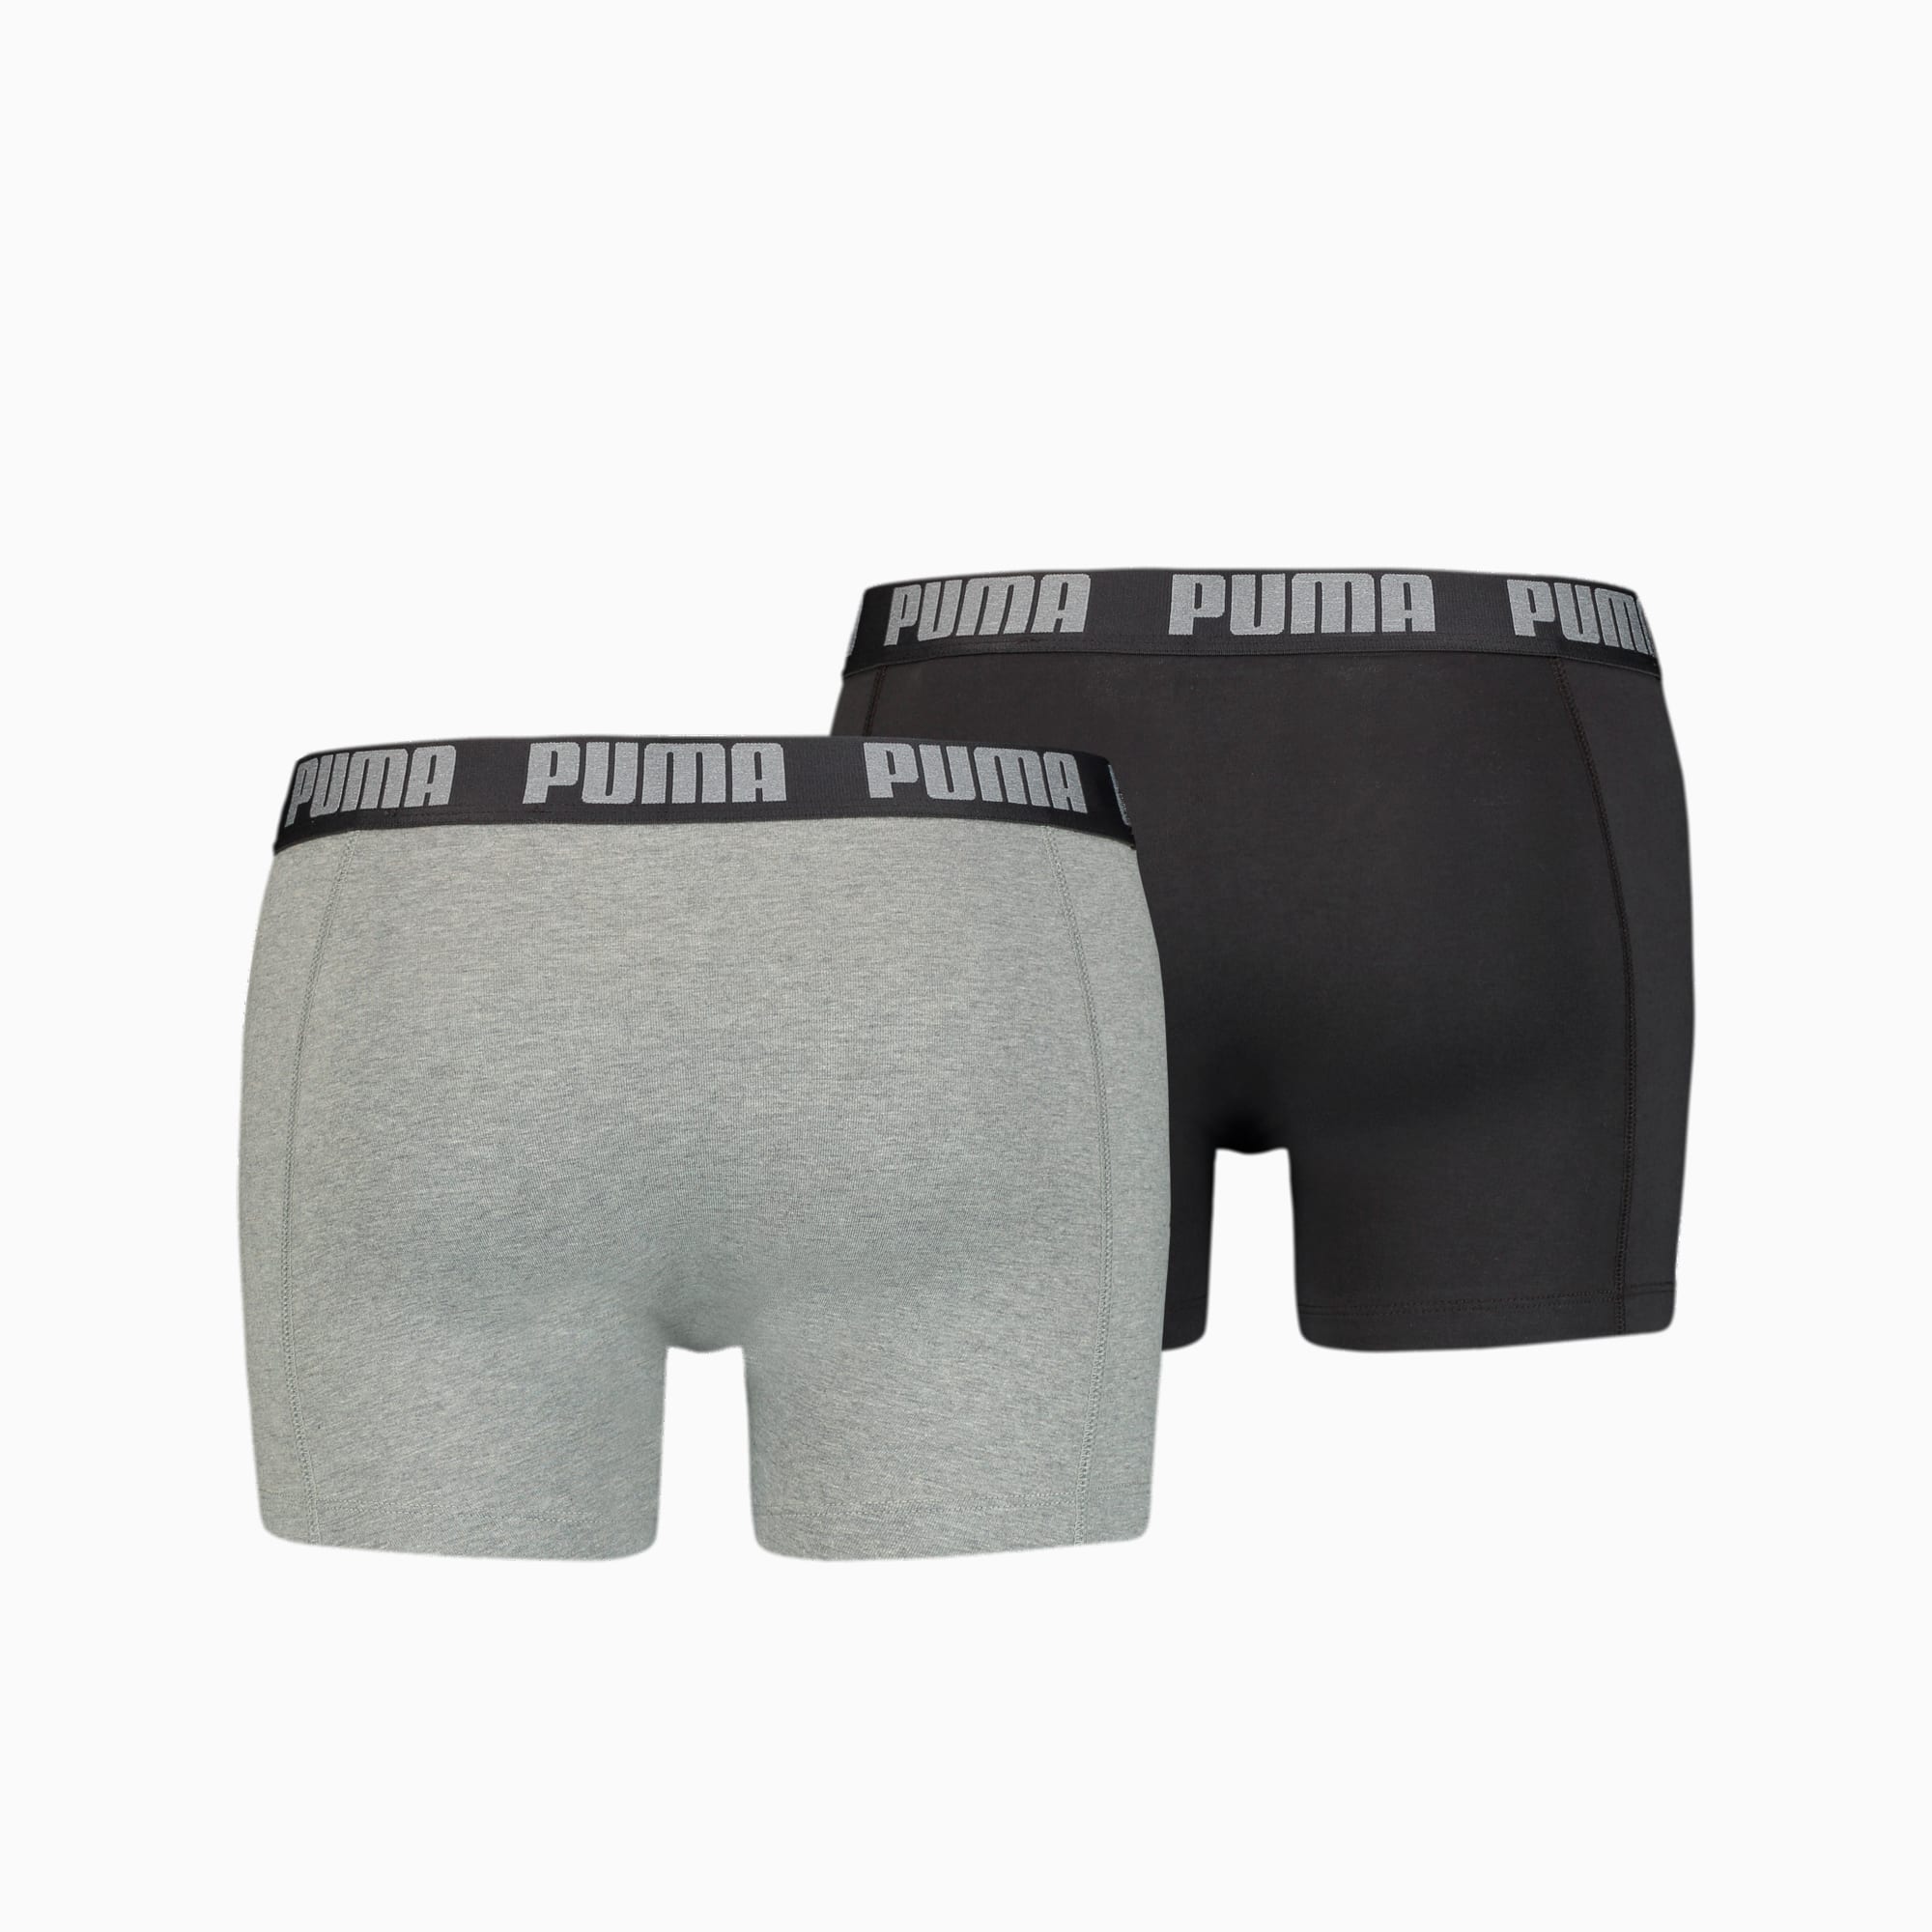 Scheiden kortademigheid Daar PUMA Basic Boxershorts voor Heren, set van 2 stuks | | PUMA